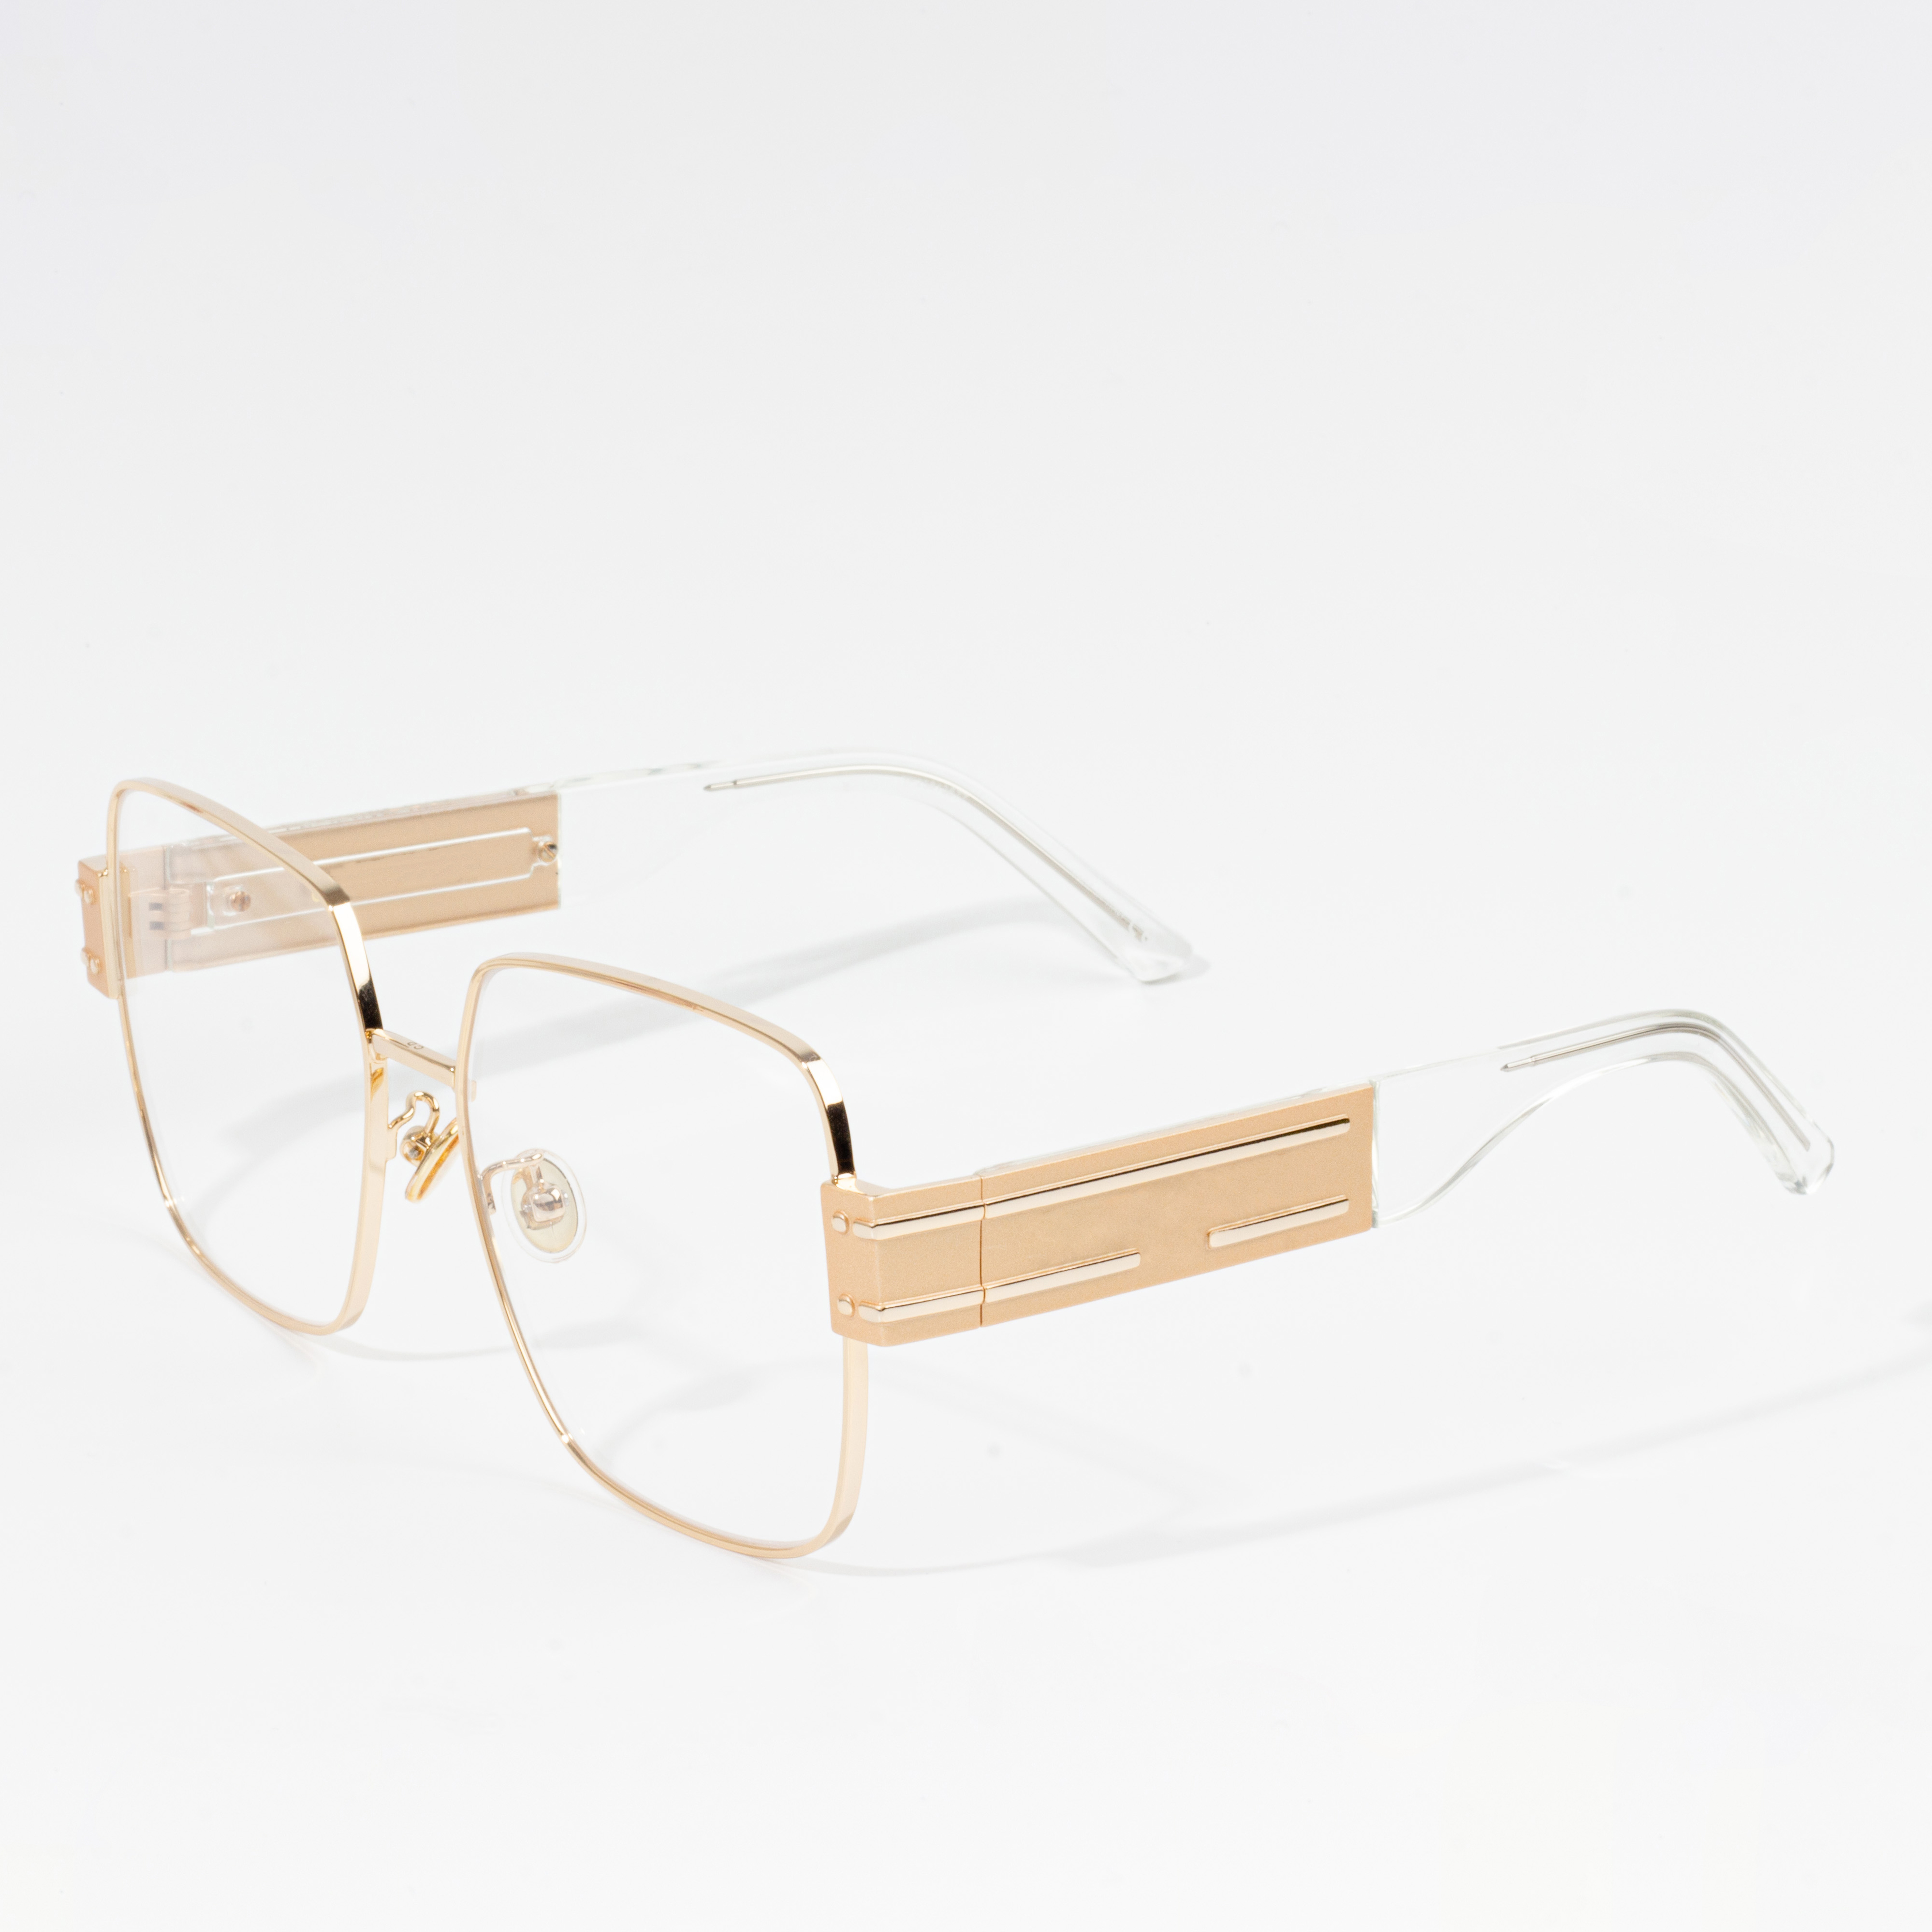 універсальні модні окуляри